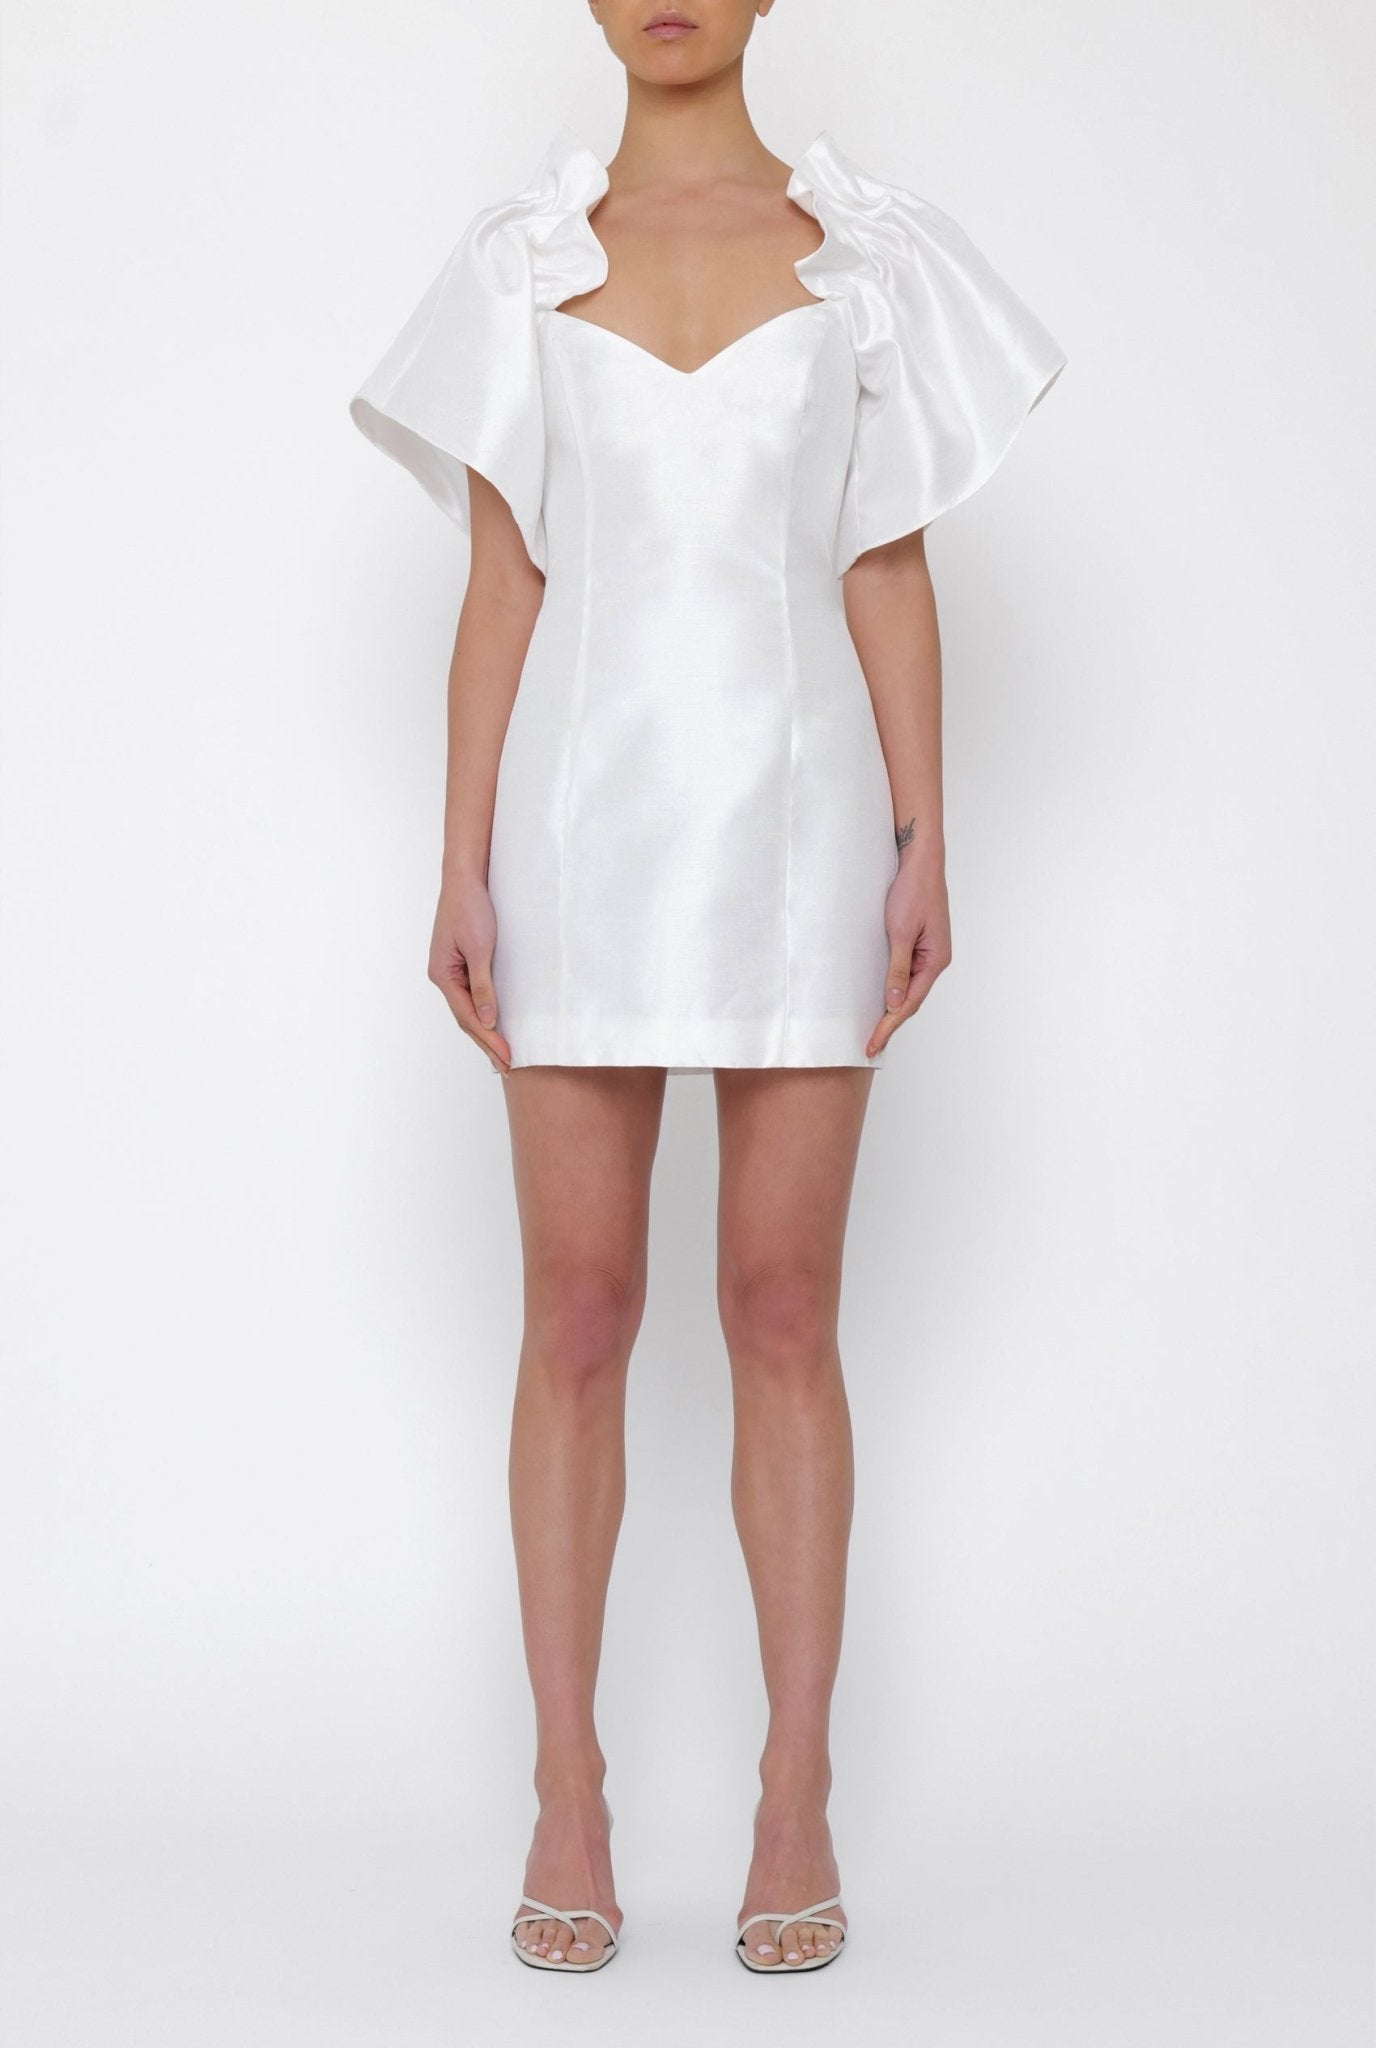 Lilian Dress in White - BOSKEMPER